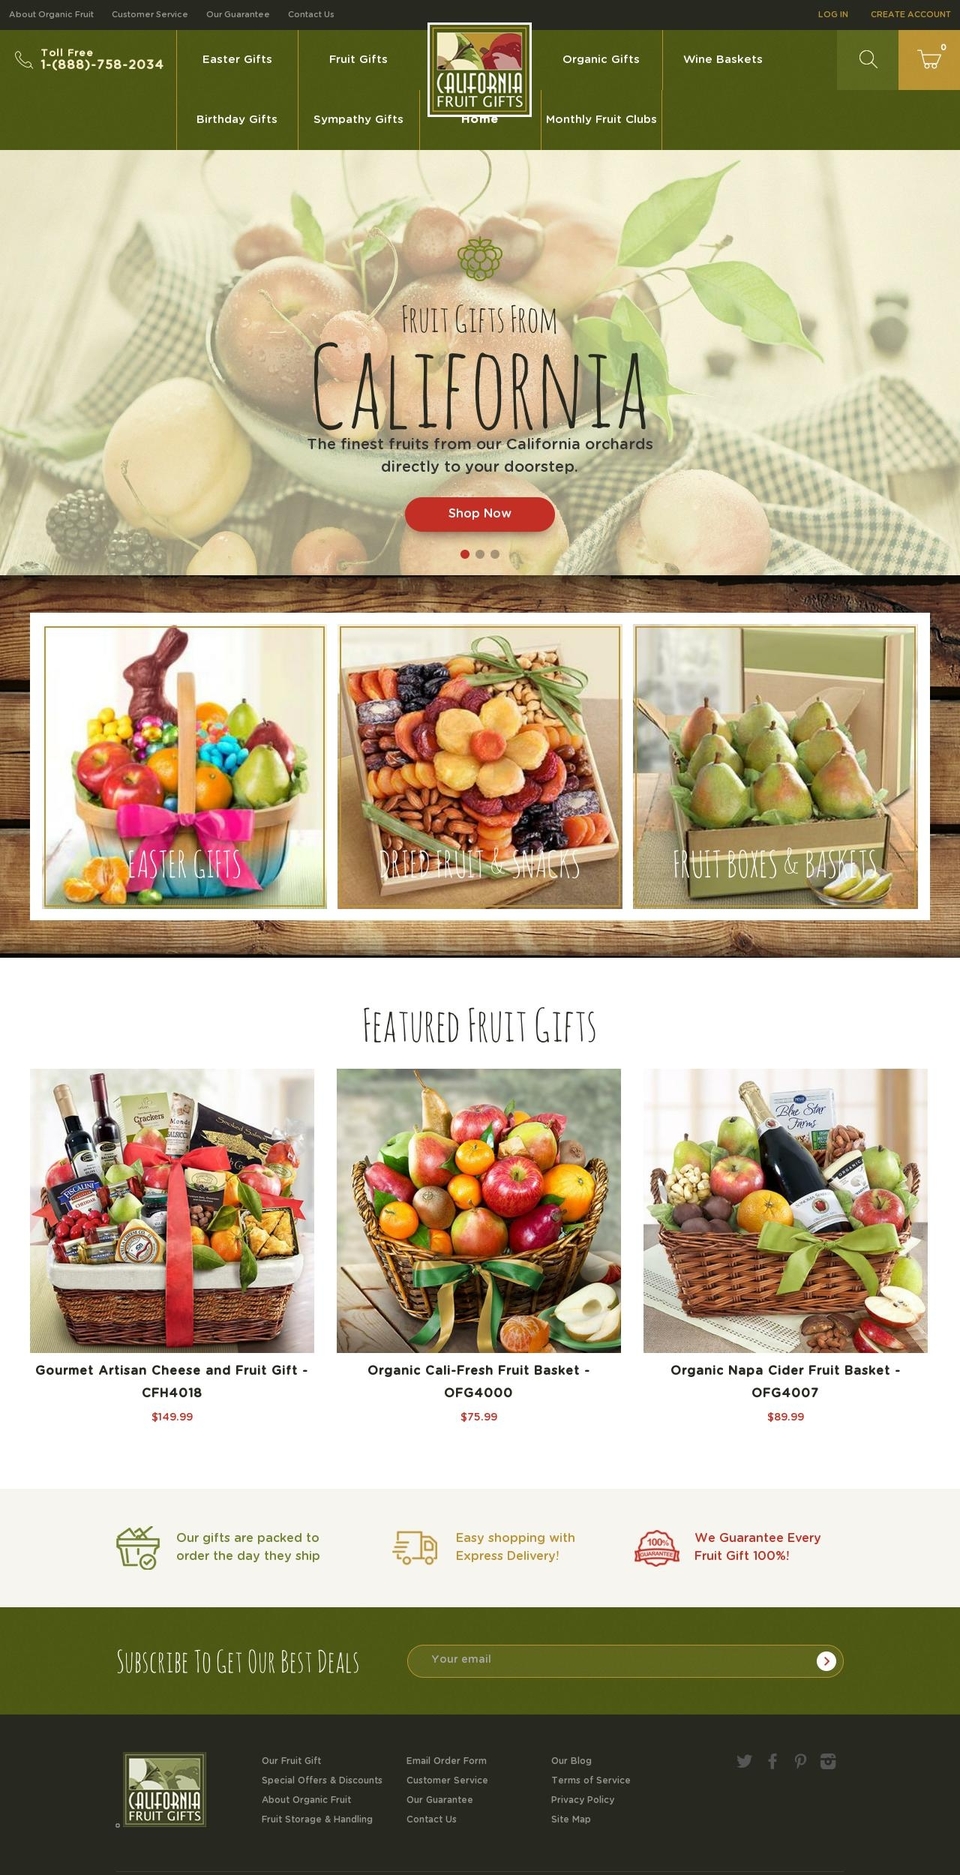 driedfruitbaskets.com shopify website screenshot